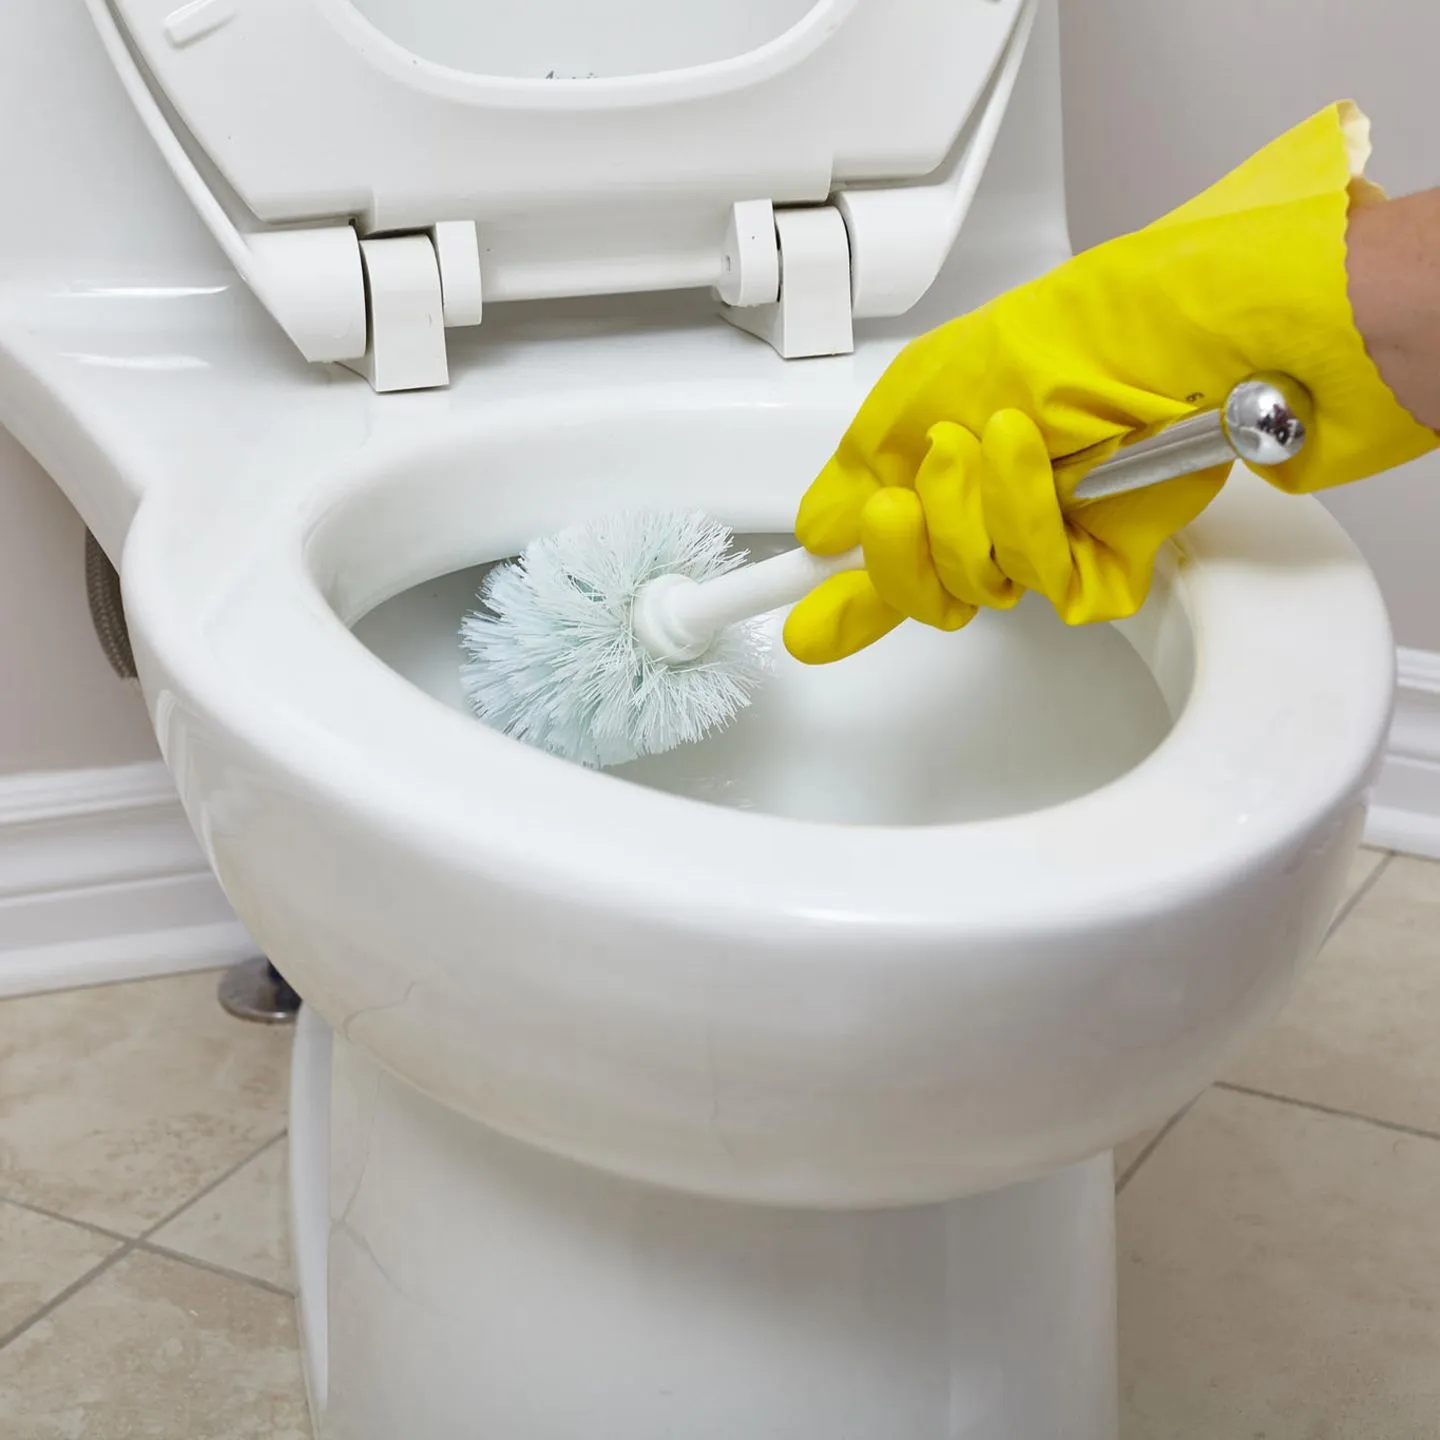 Народное средство очистить унитаз. Чистка унитаза. Уборка туалета. Мыть унитаз. Прочистка унитаза машинкой.